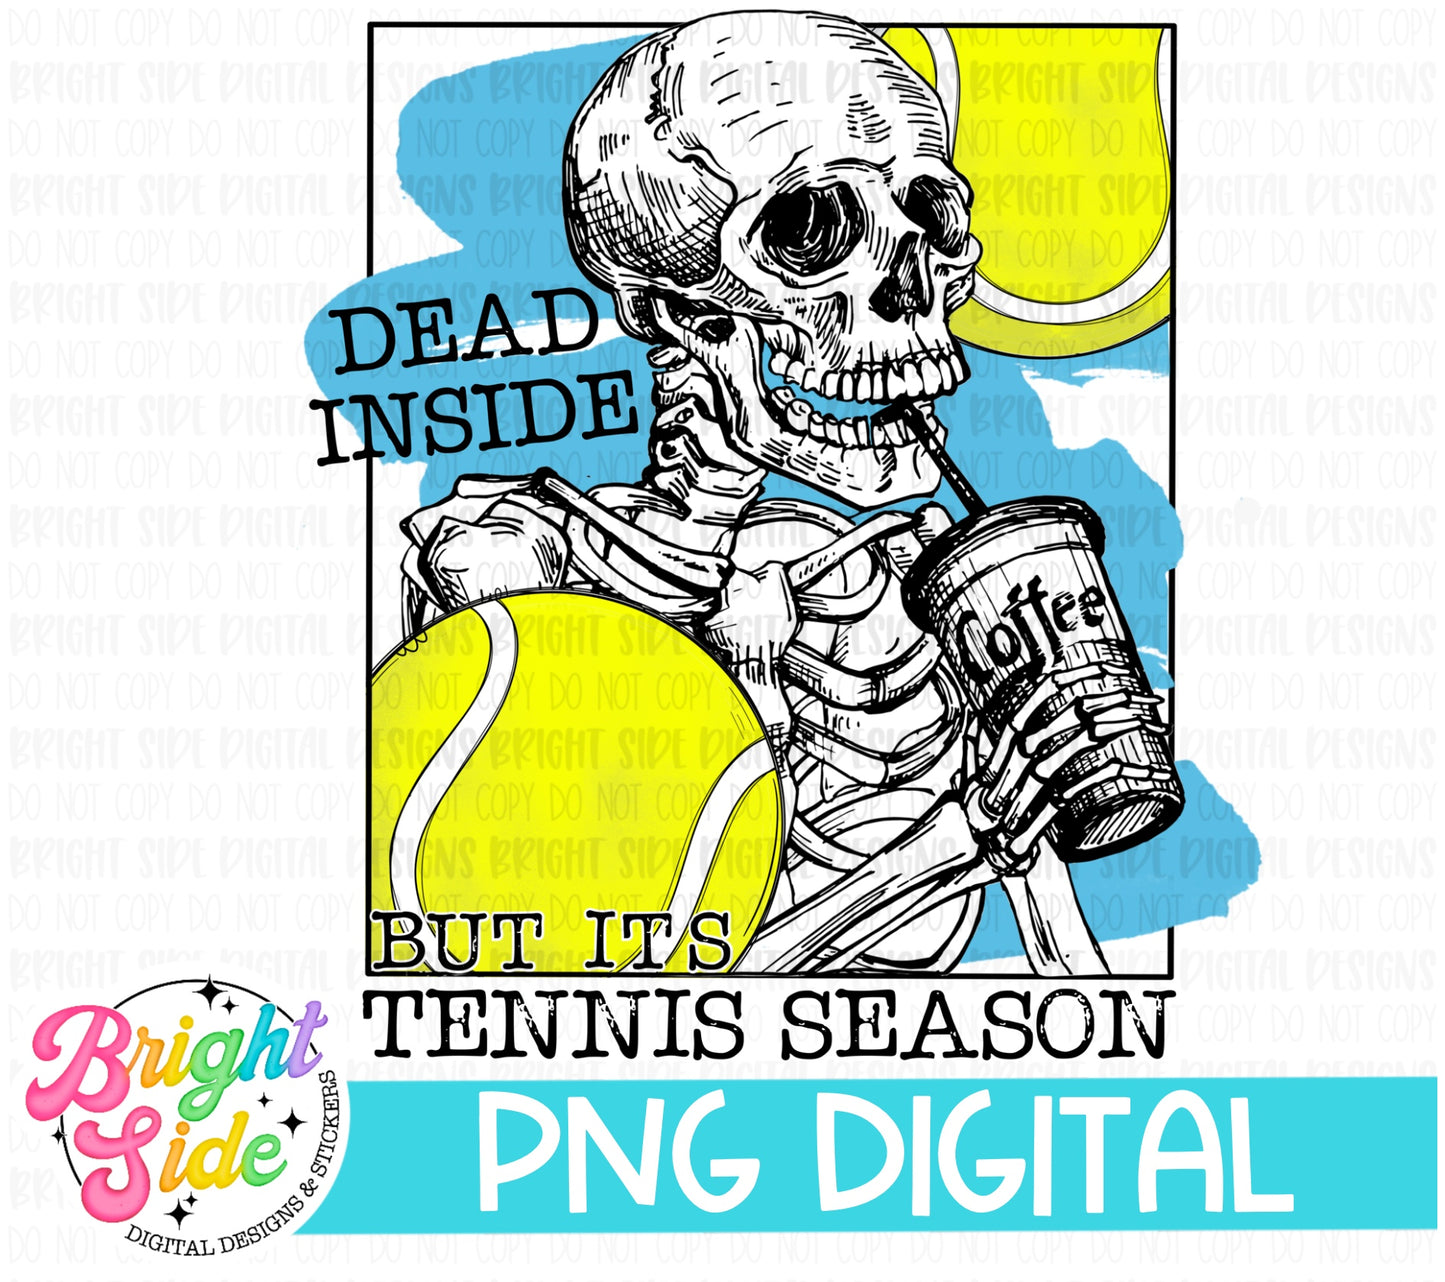 Dead inside but it’s tennis season -blue